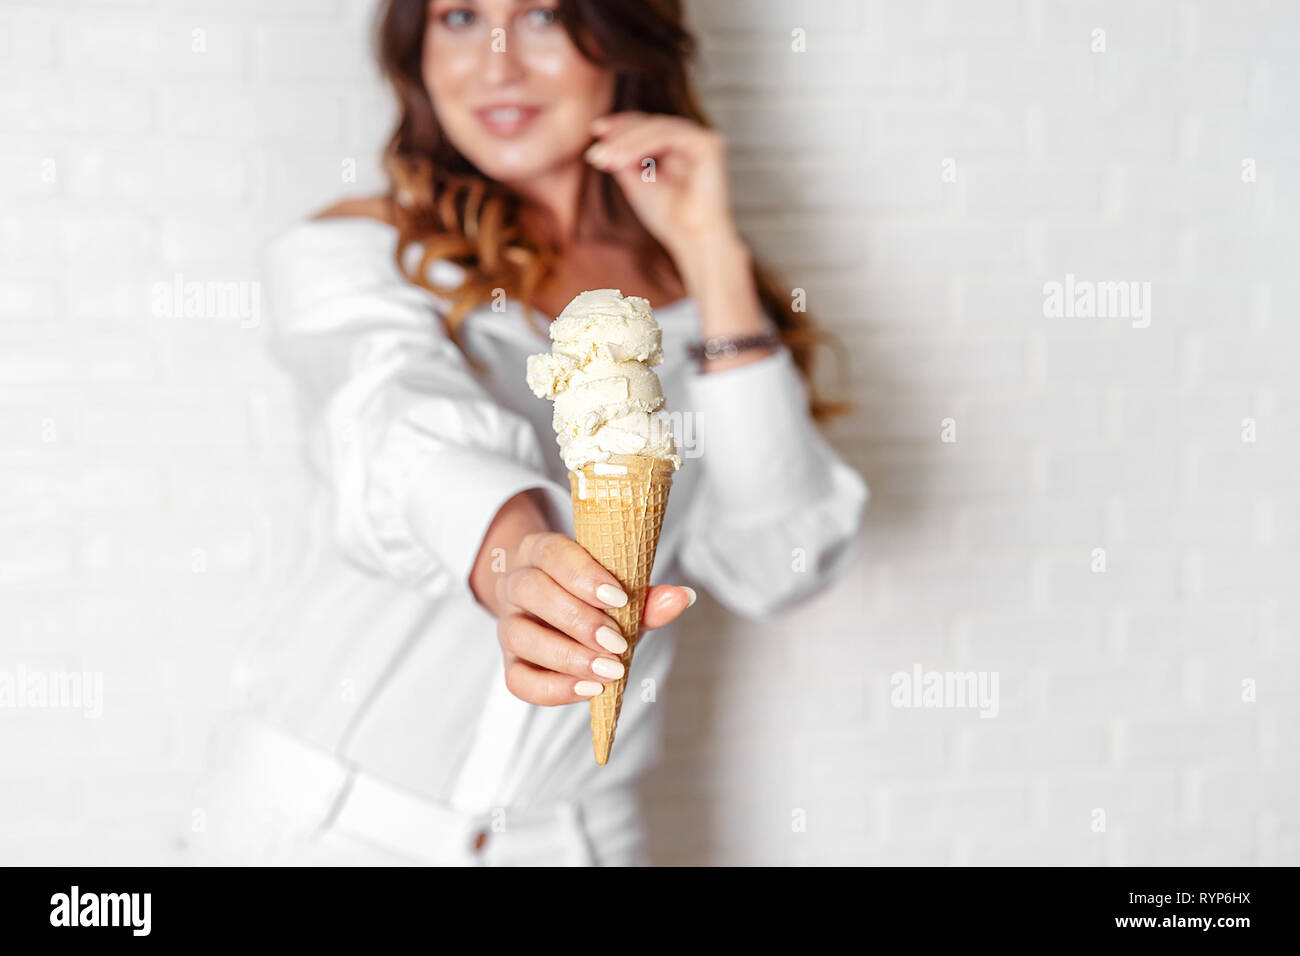 Vanilla ice cream cone in woman's hand closeup Stock Photo